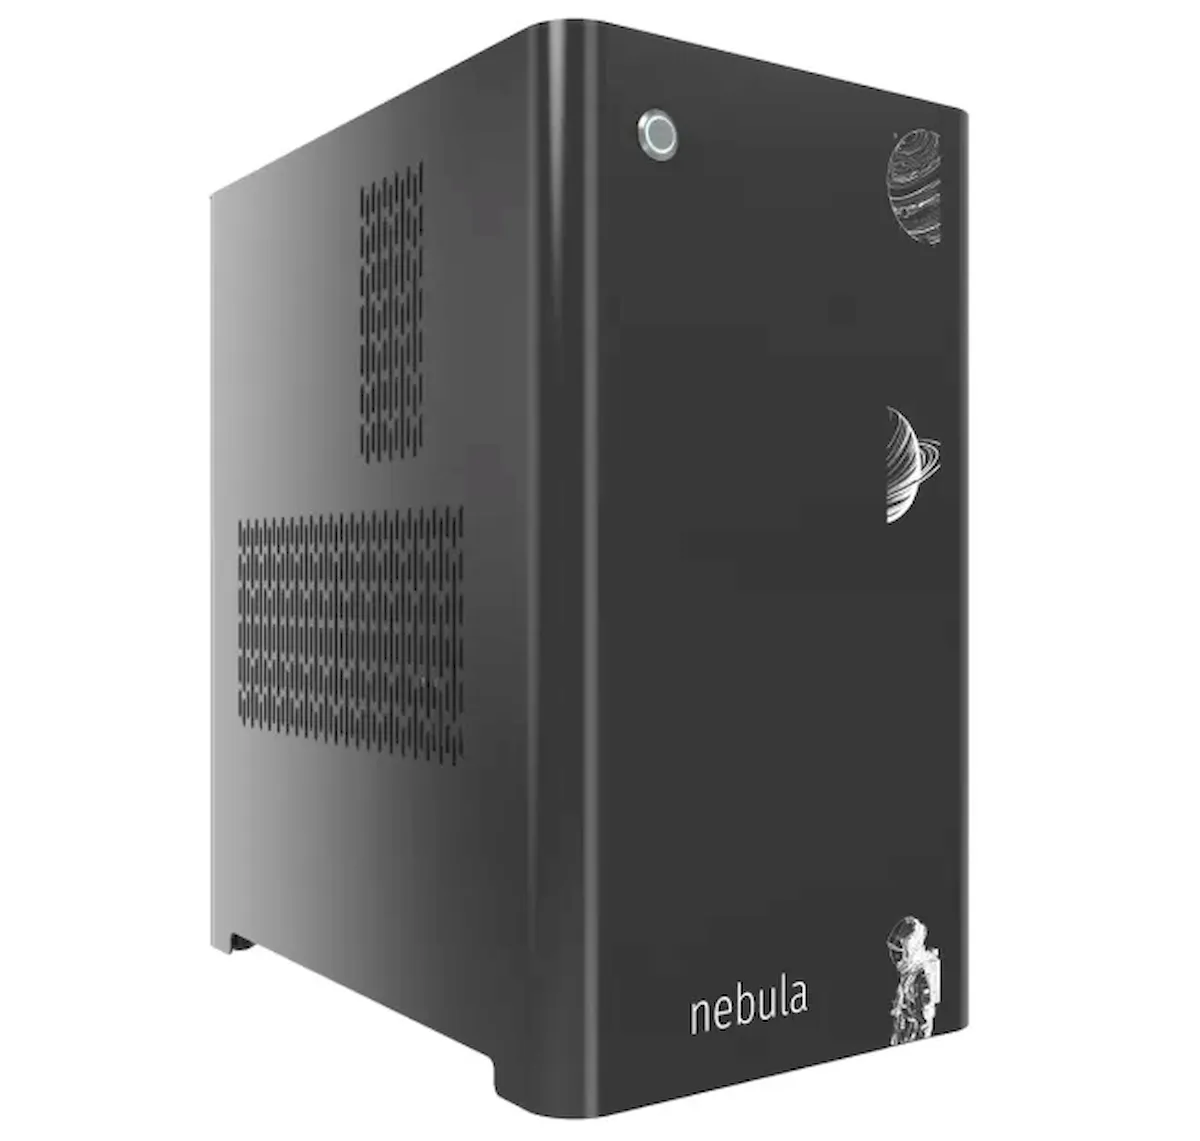 System76 lançou os gabinetes de PC Nebula inspirado nos Thelio